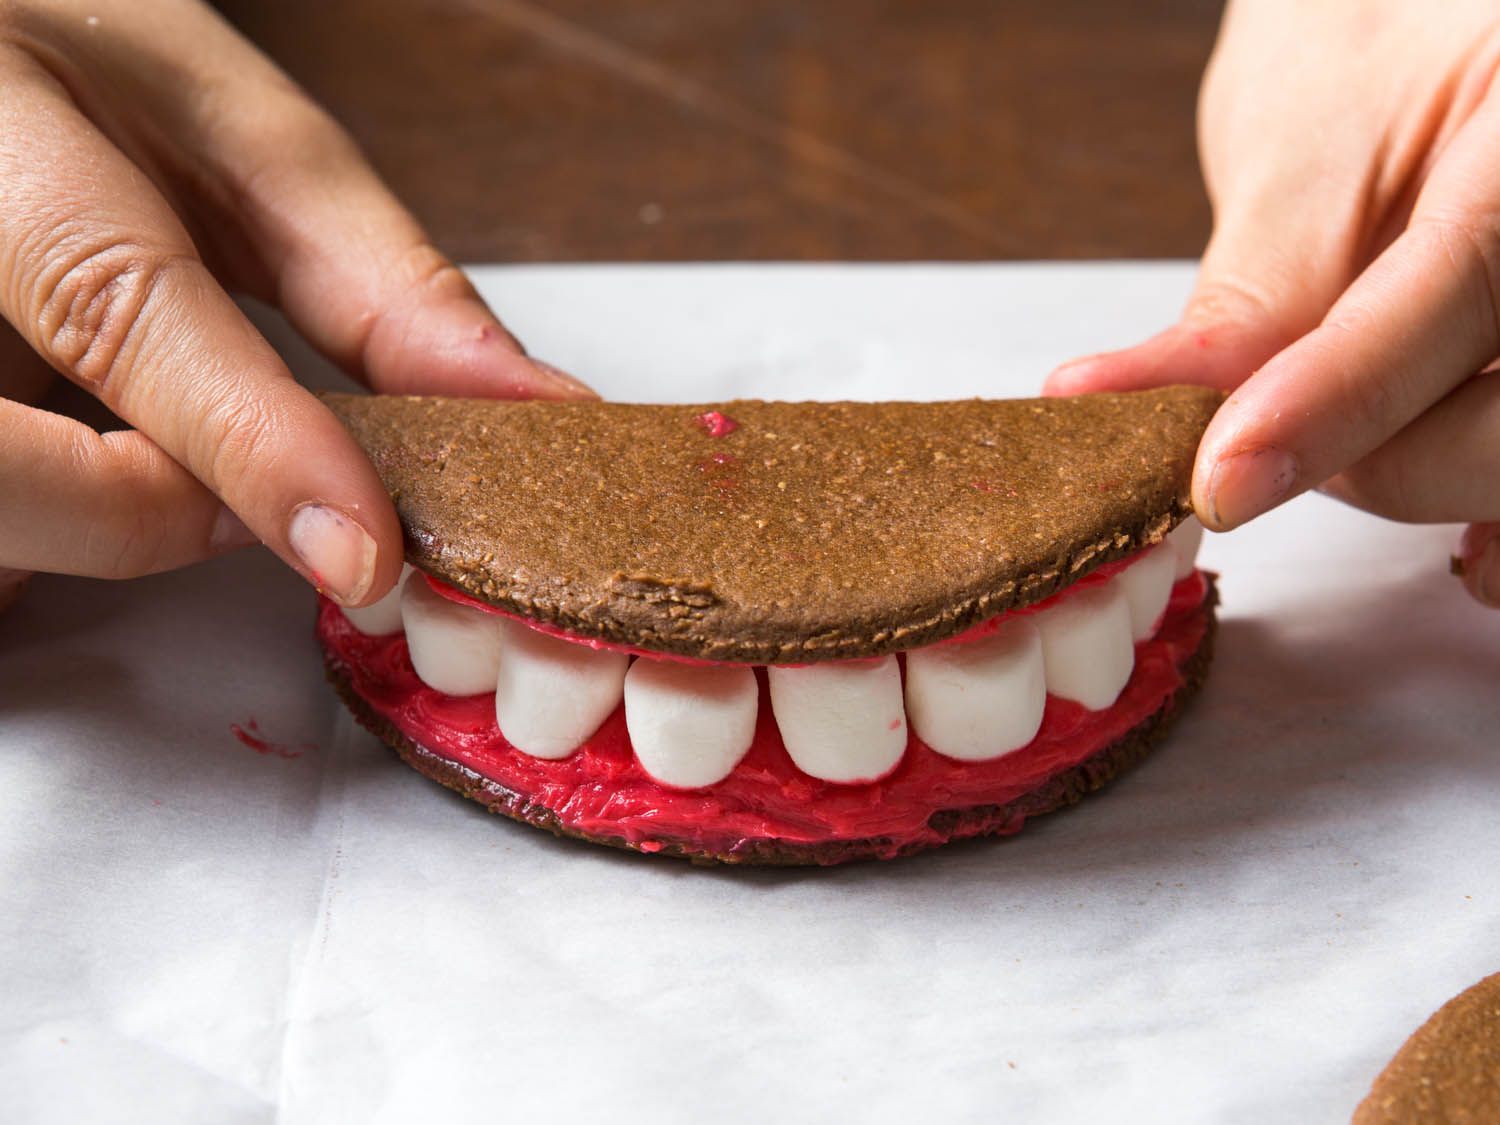 Placing on top half of vampire teeth sandwich cookie.